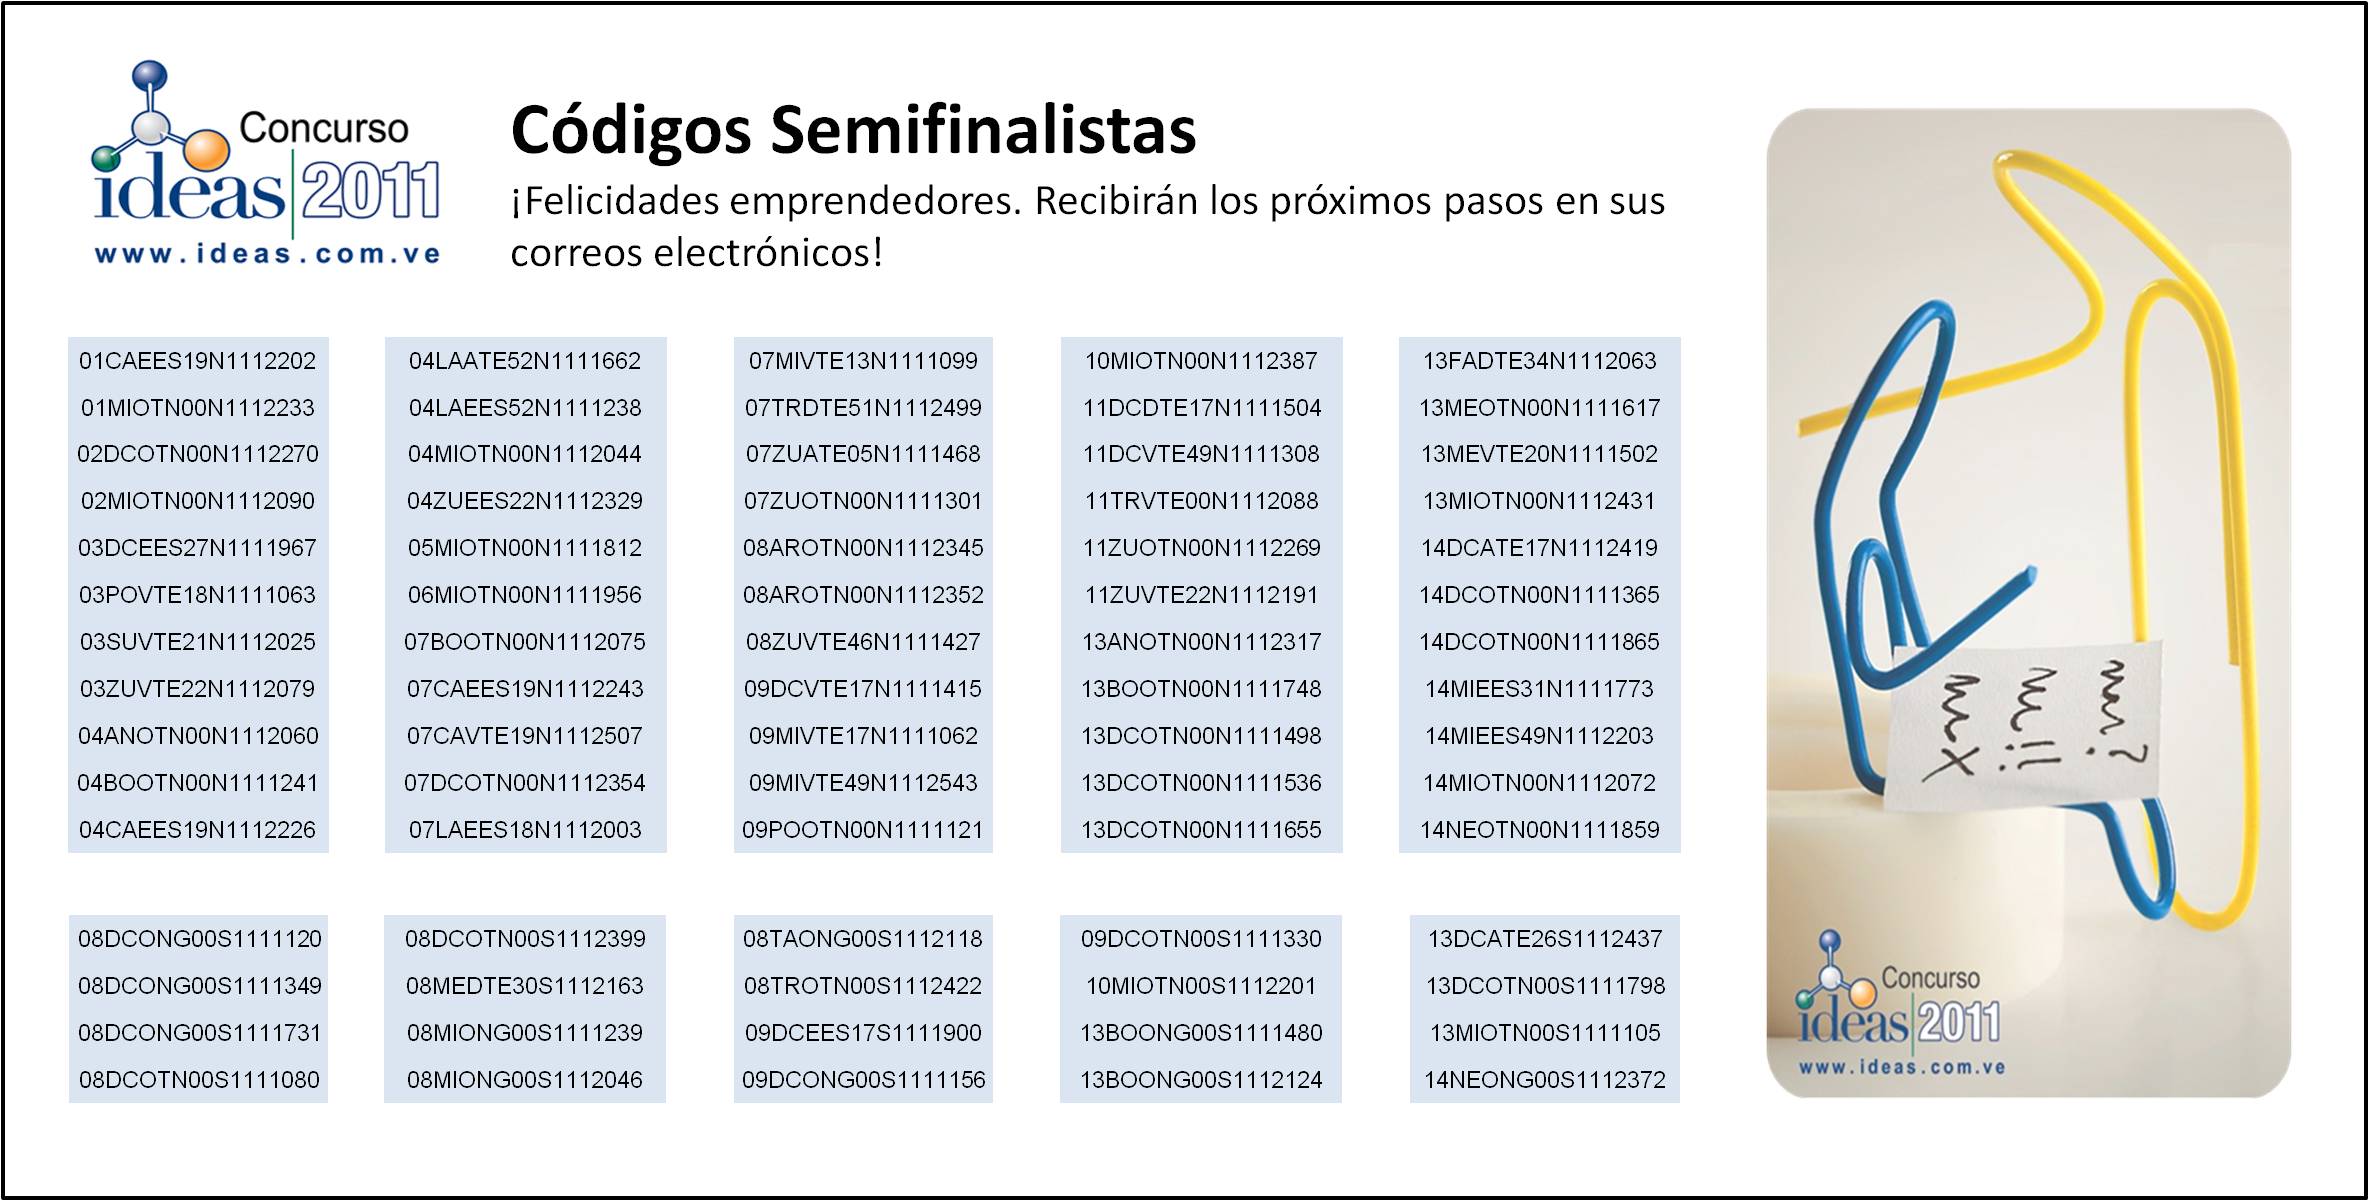 Archivo:Codigos_Semifinalistas.jpg